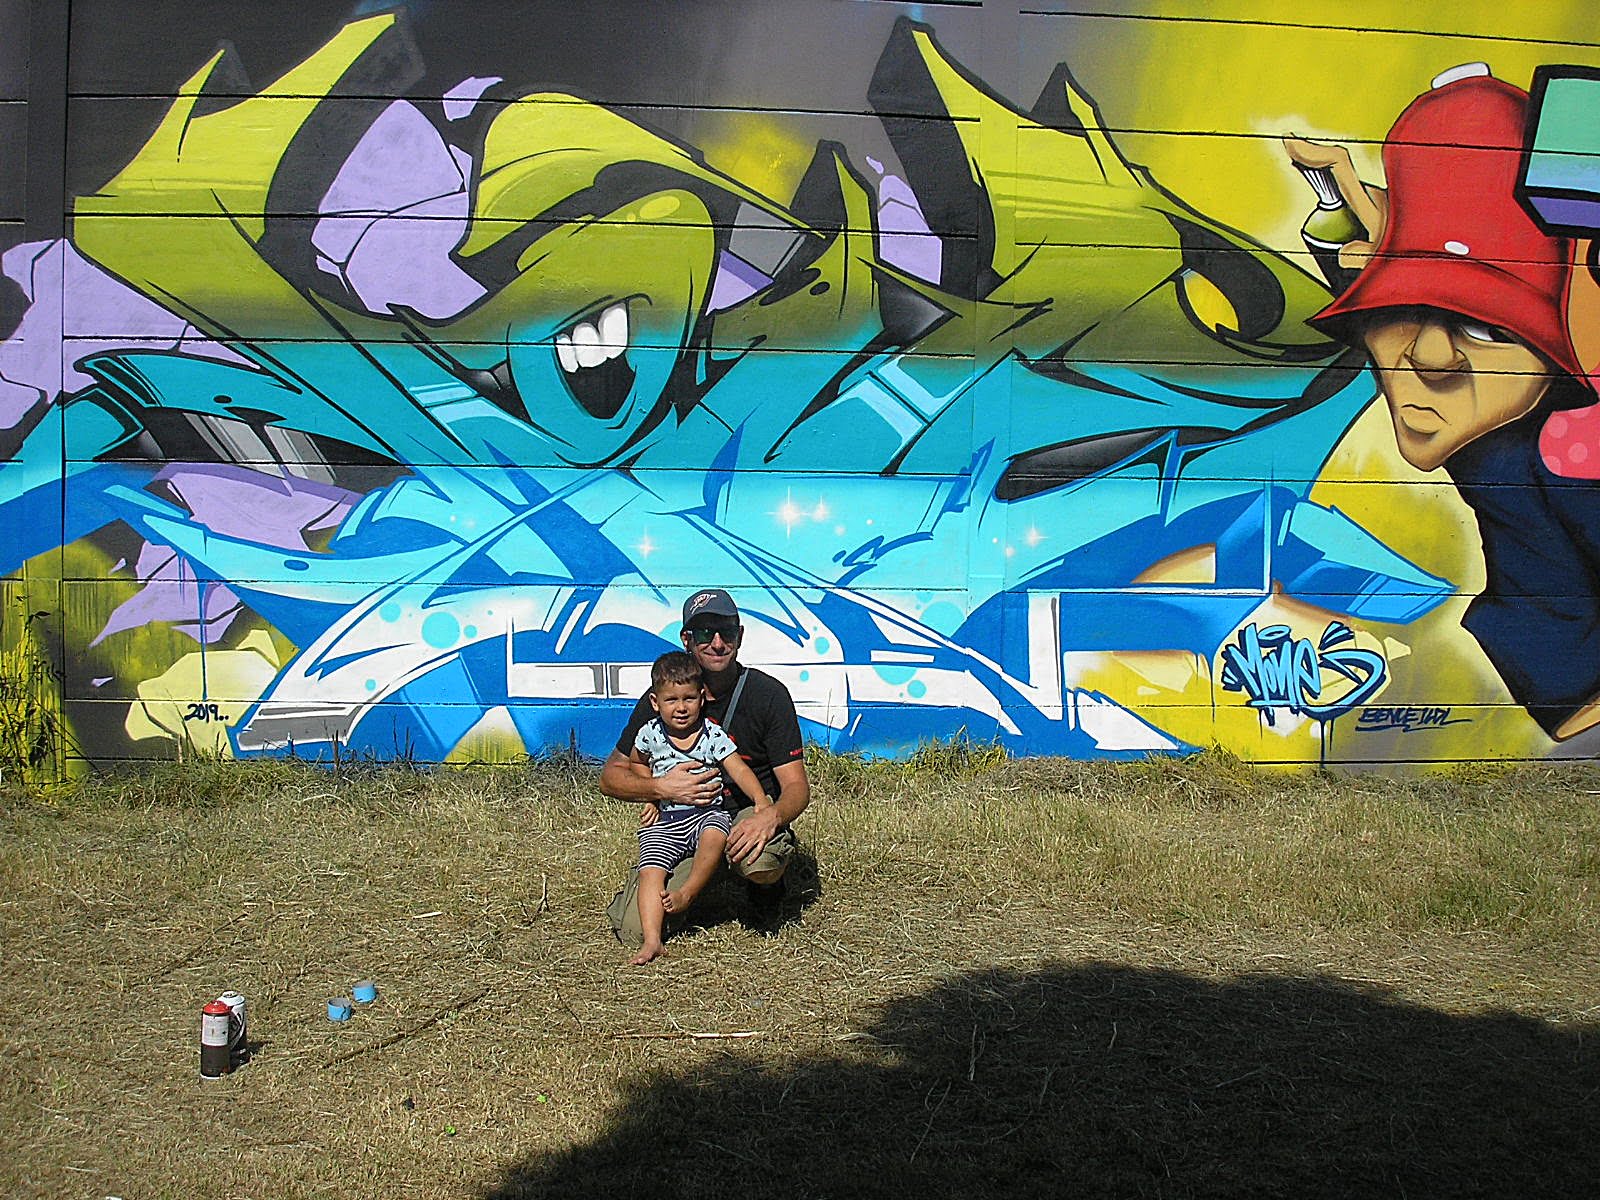 Interjú Mone graffiti művésszel